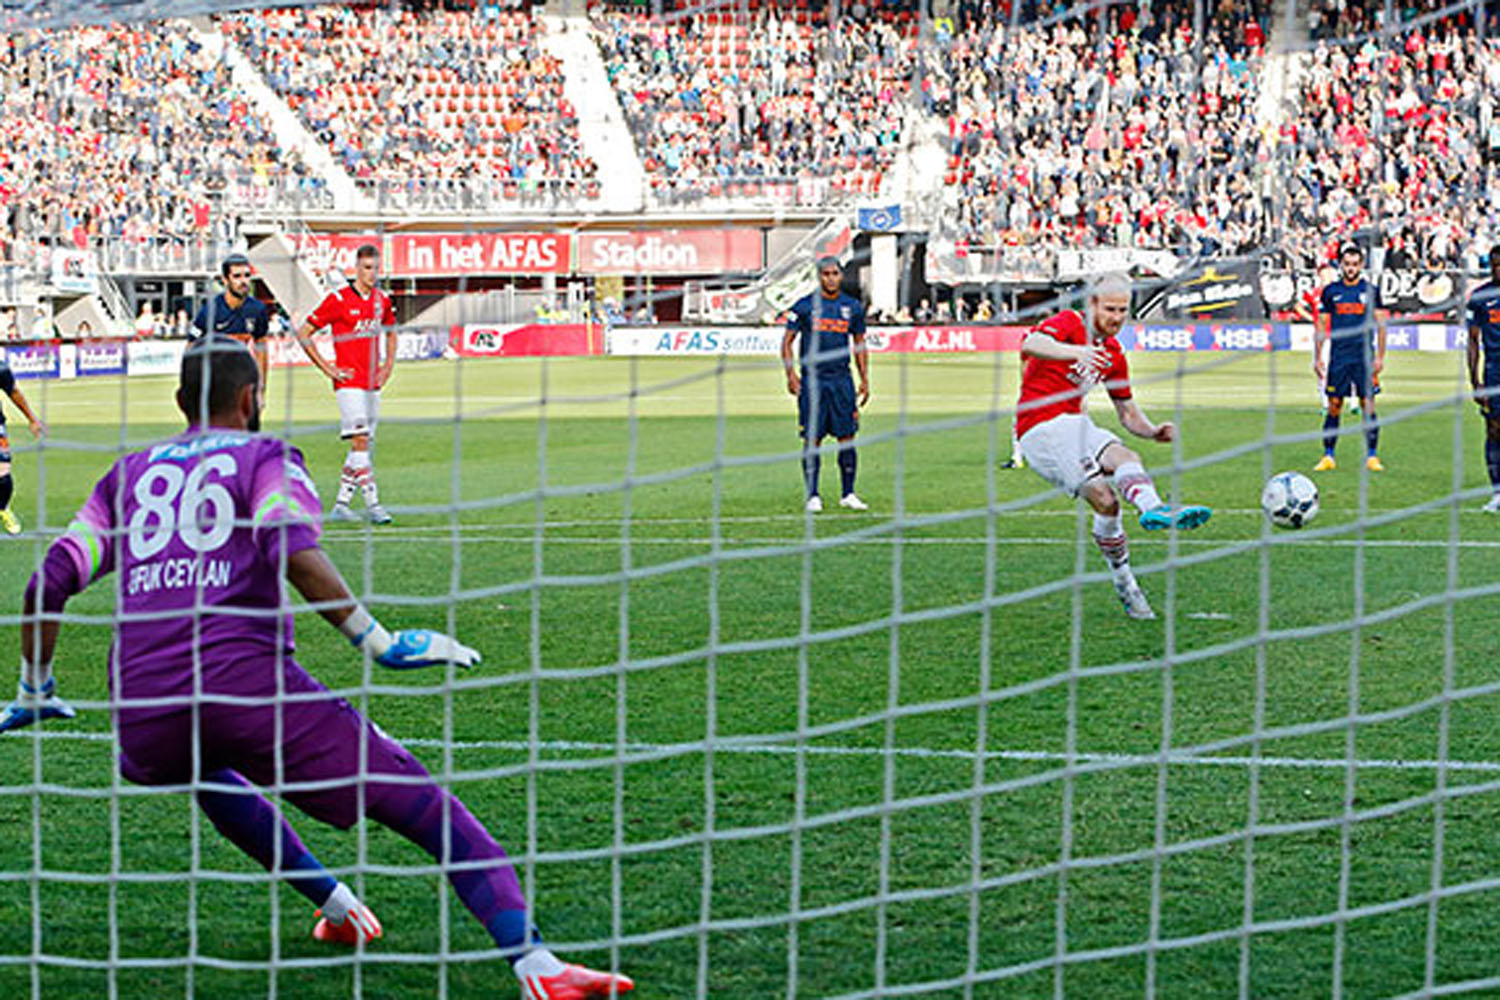 Jop van der Linden scores for AZ from penalty spot